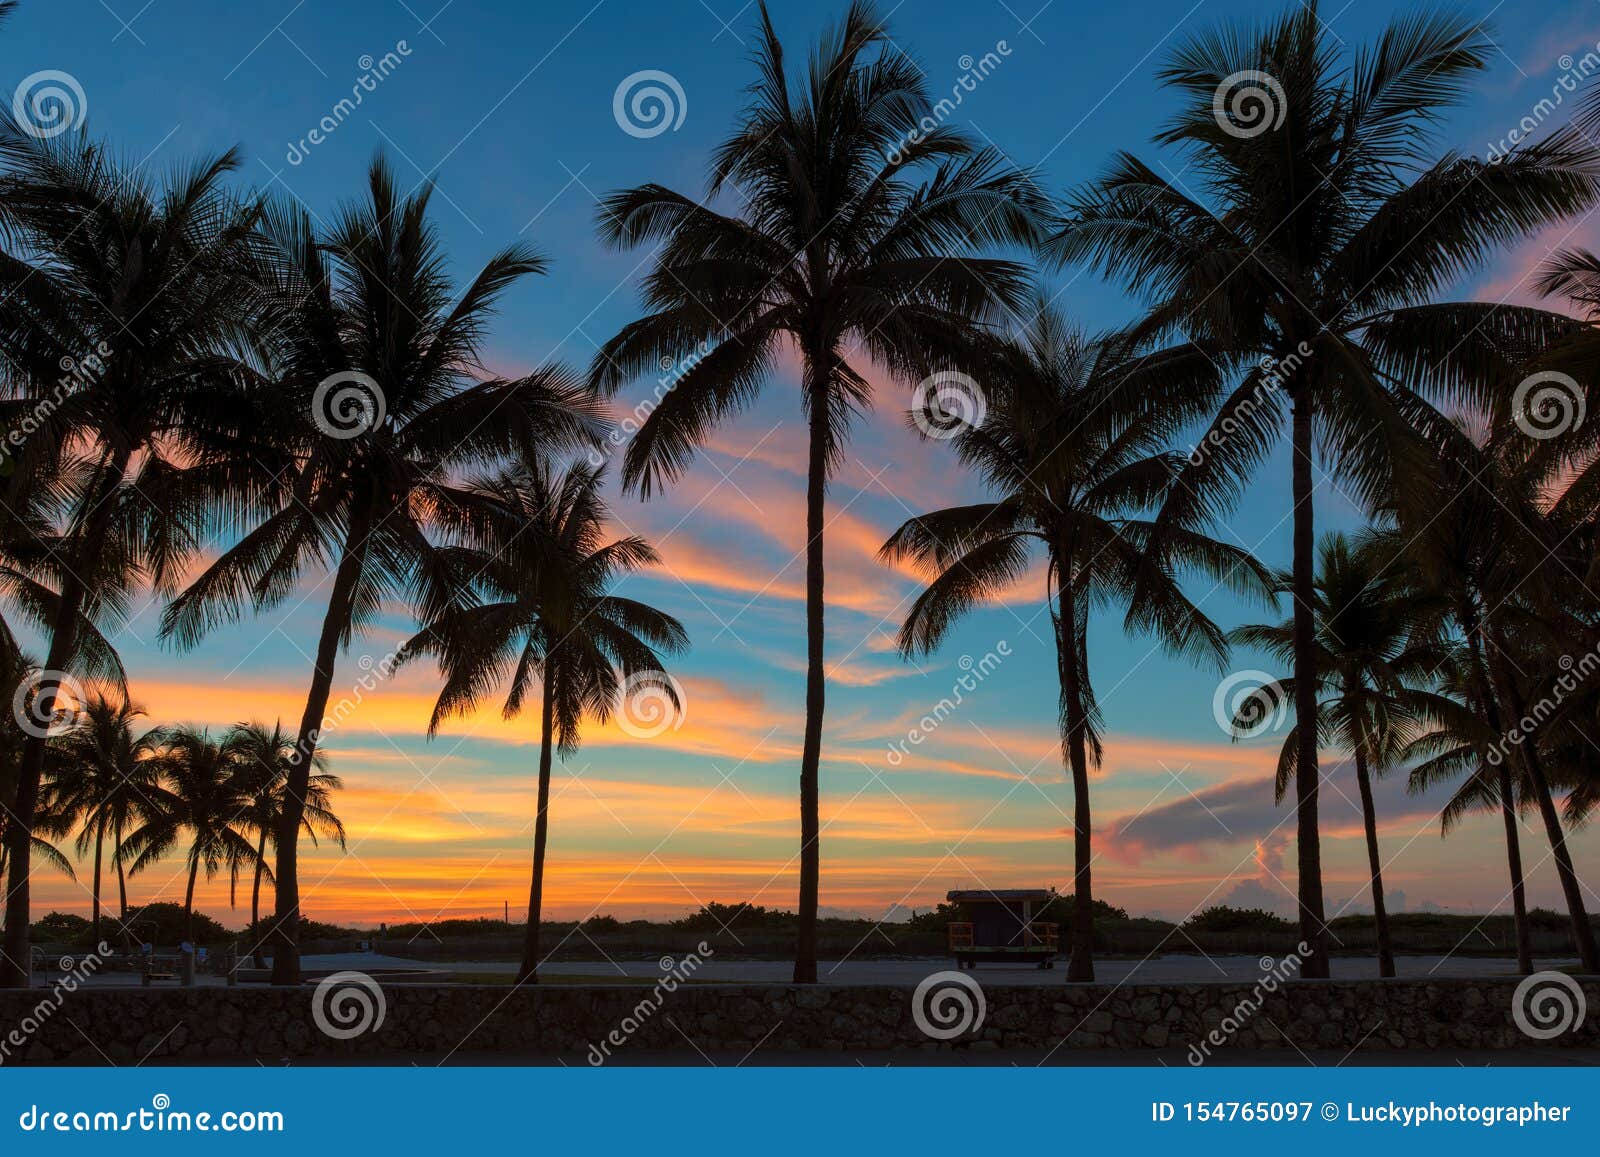 Palmiers Sur Miami Beach Au Lever De Soleil Image Stock